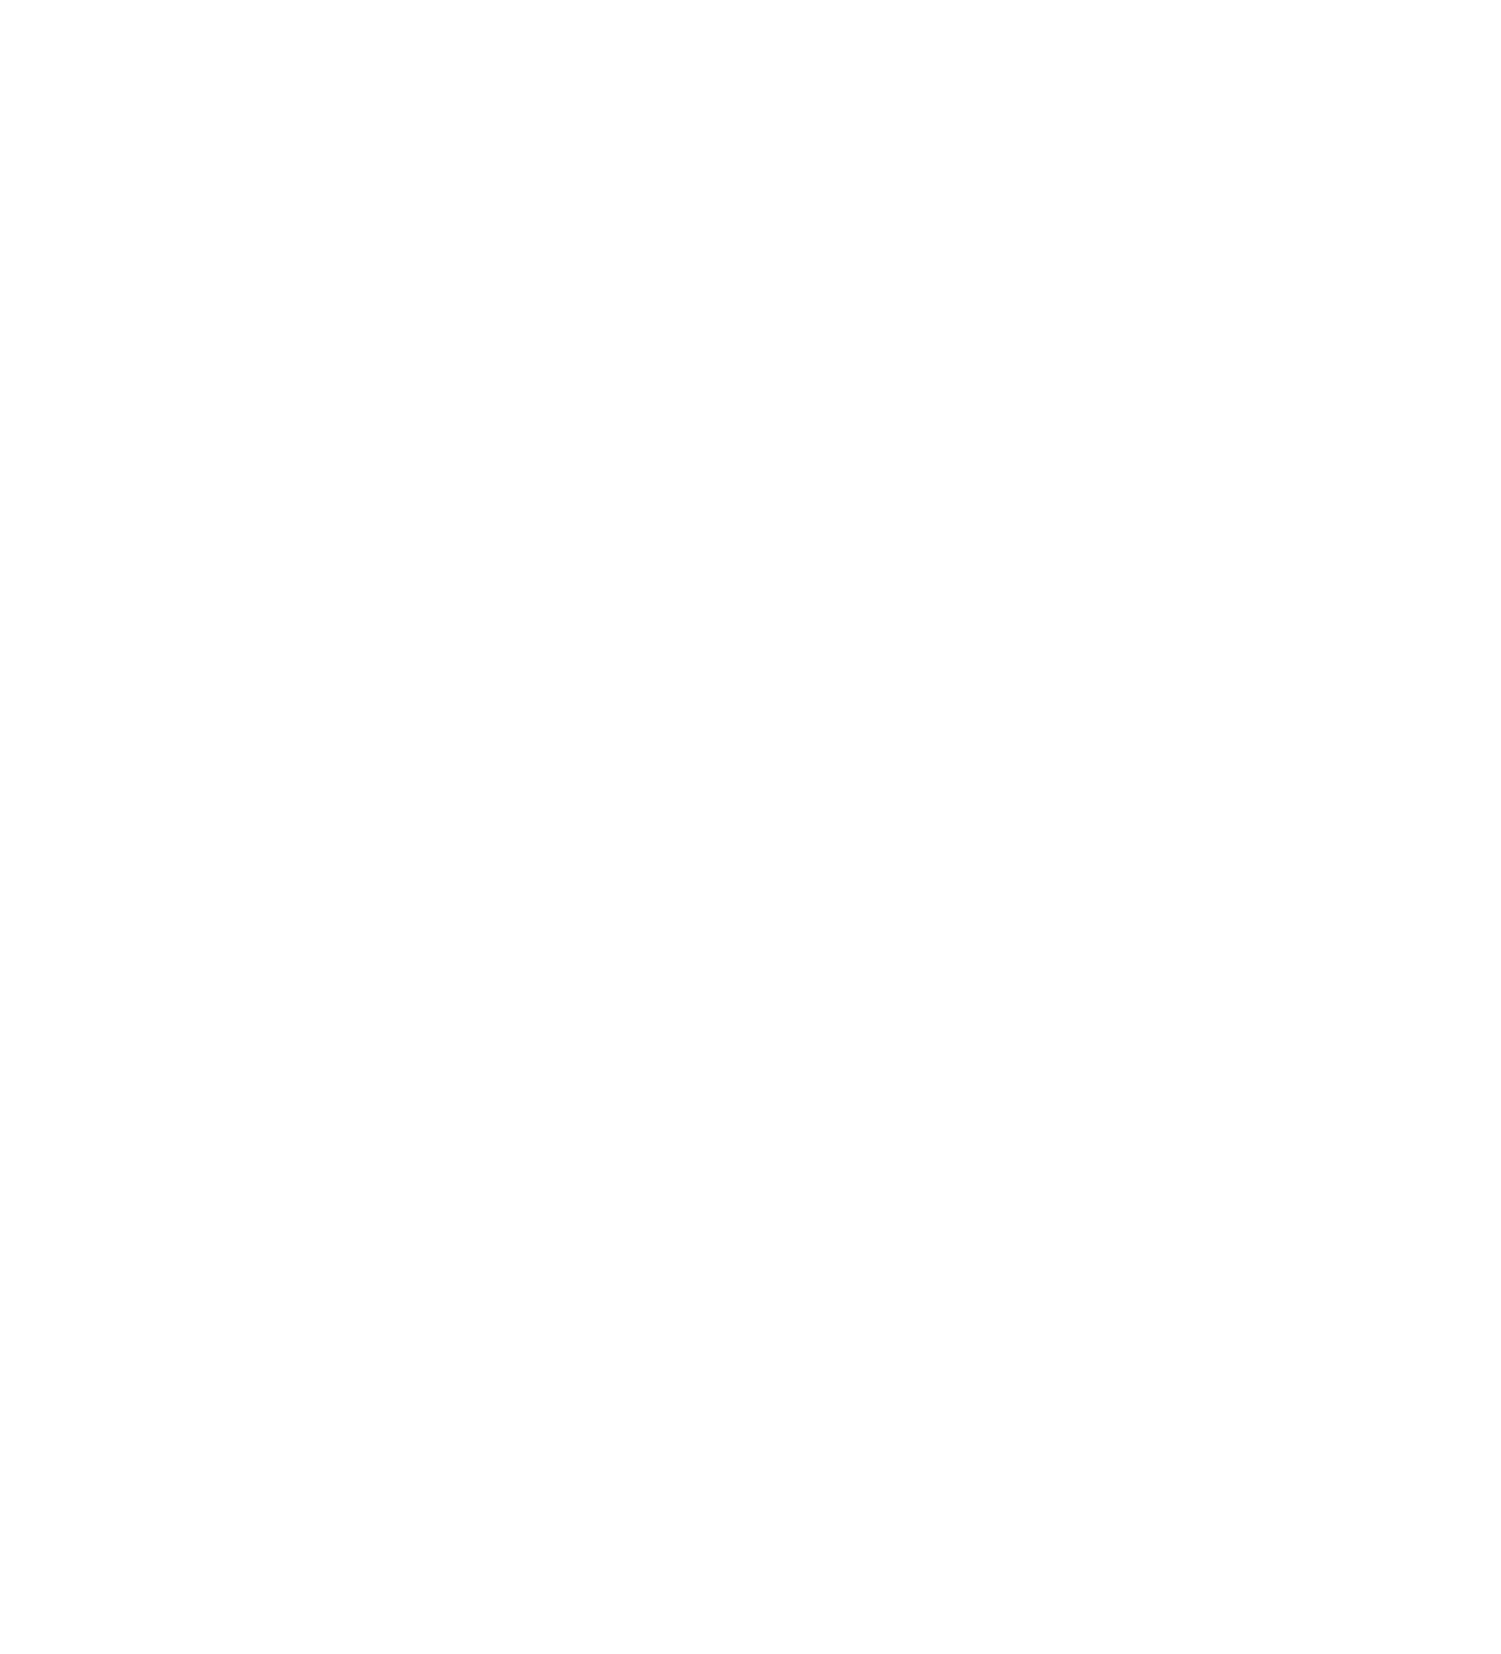 FIVE RULE Rural Planning